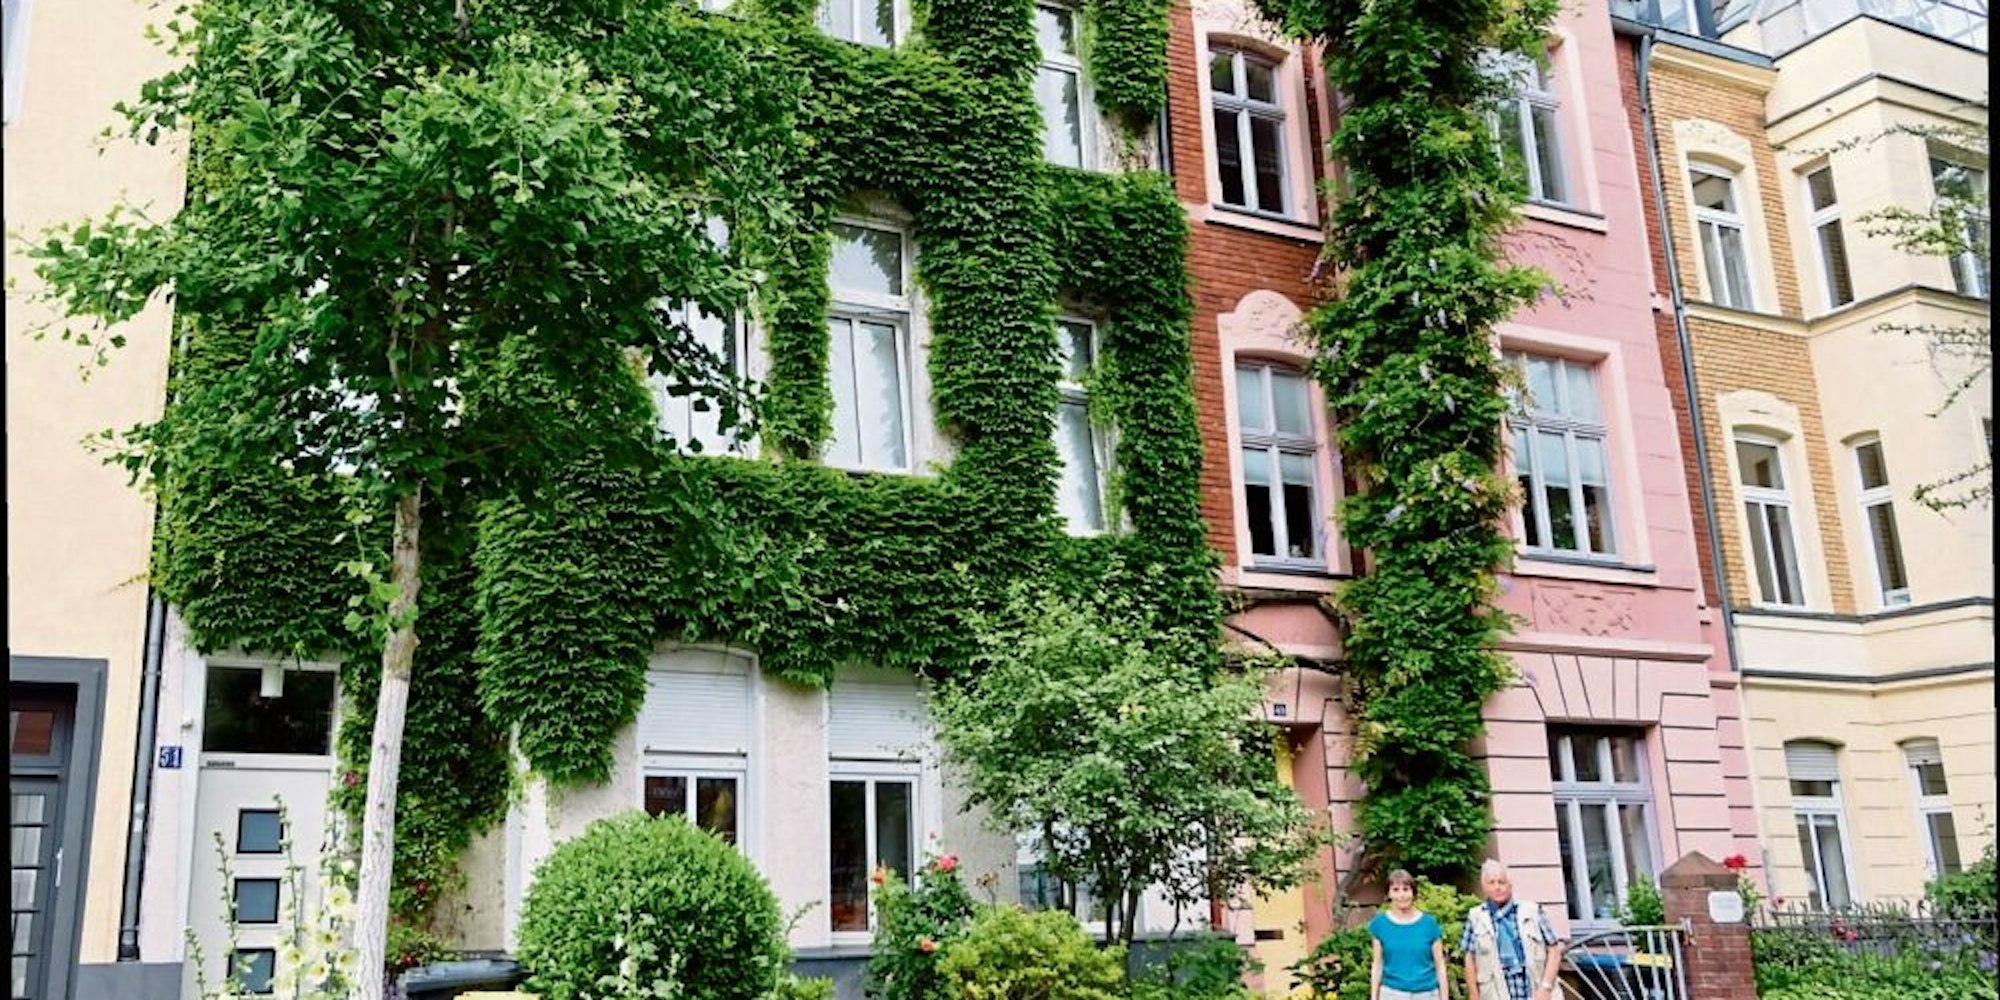 Neben dem blauregengeschmückten Haus mit der Nummer 51 in der Palanterstraße ist das Nachbarhaus mit wildem Wein überwuchert, der anders als der Blauregen, ohne weitere Hilfe die Fassade hochklettert.